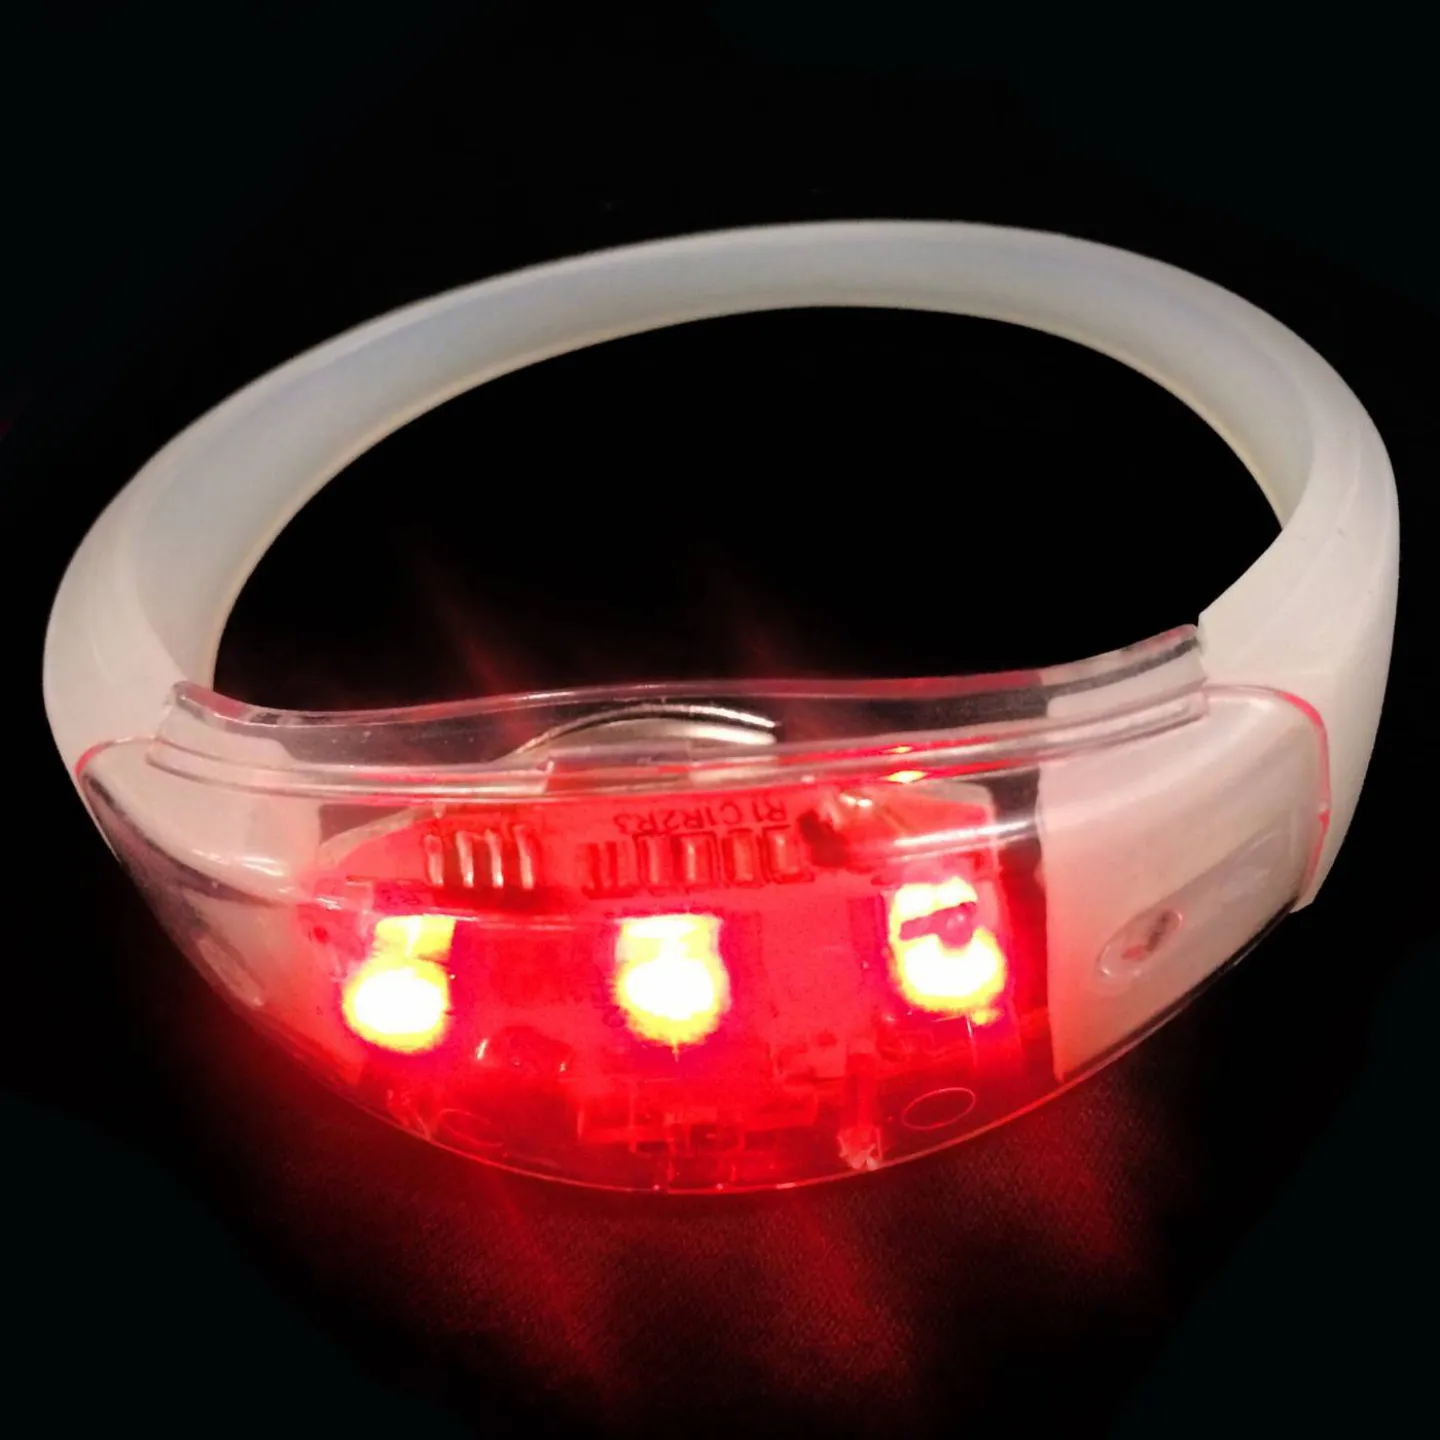 online LED armband bedrukken kopen goedkoop.